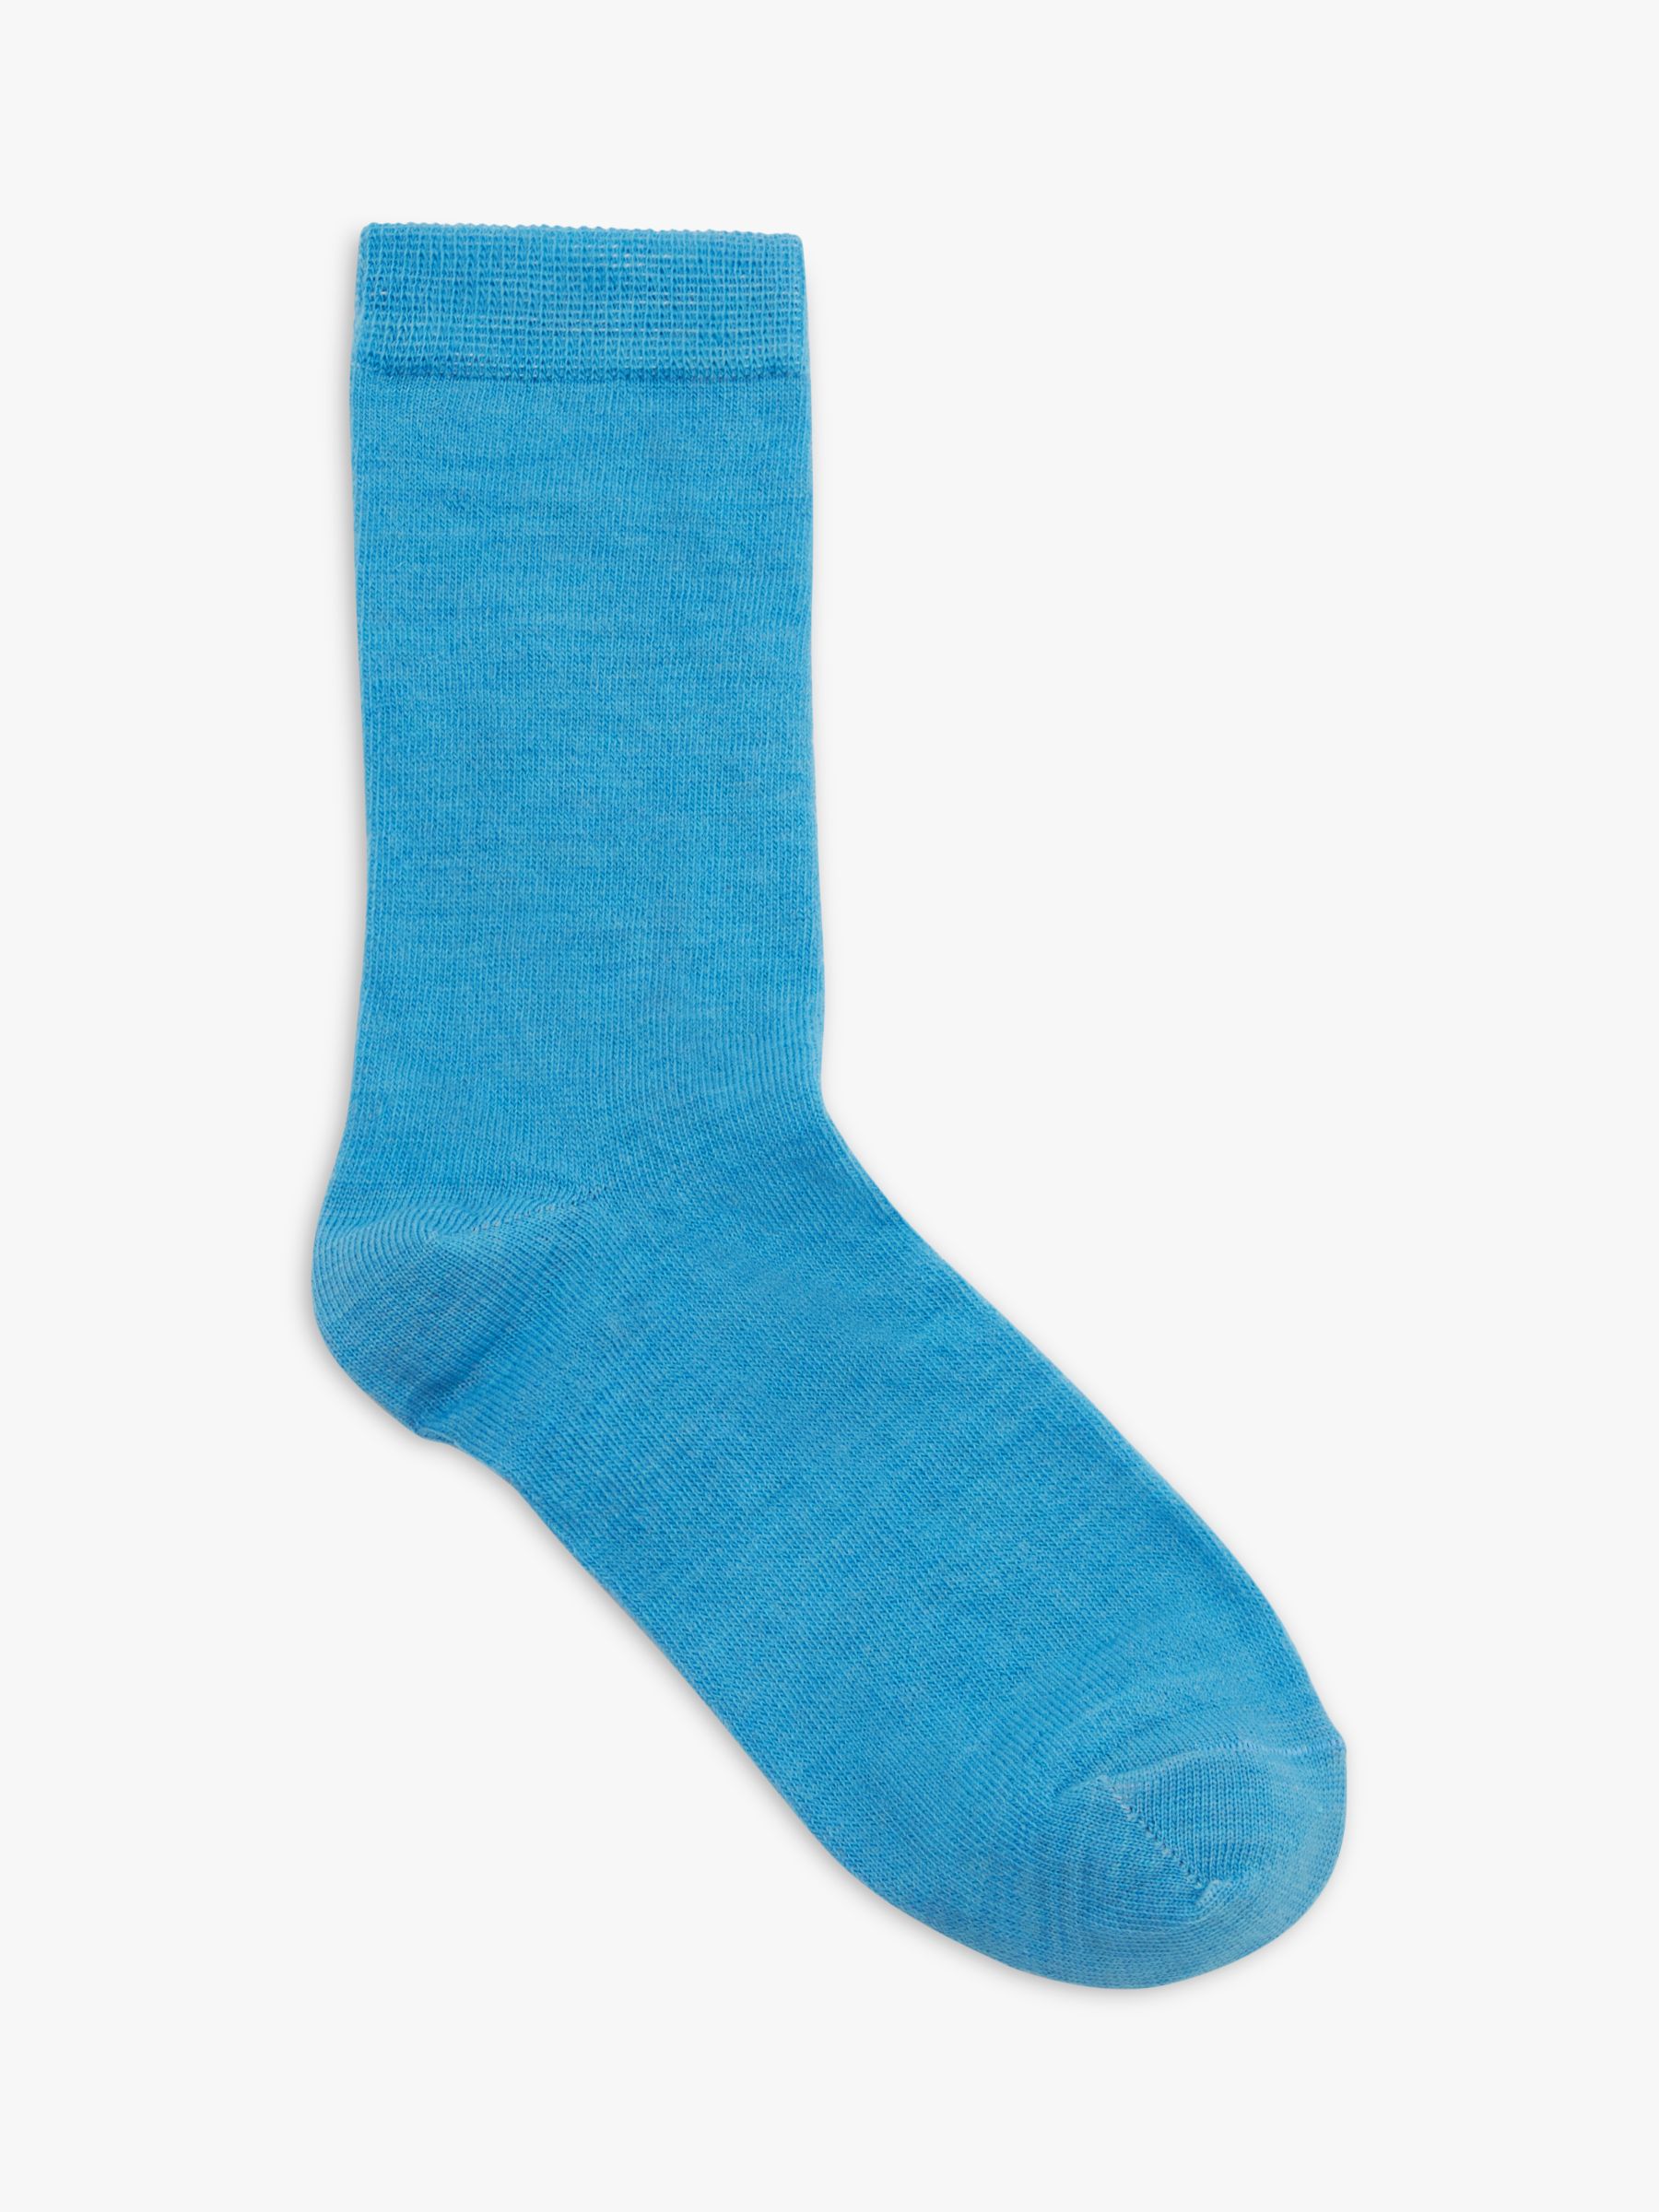 John Lewis Merino Wool Mix Ankle Socks, Pack of 2, Light Blue